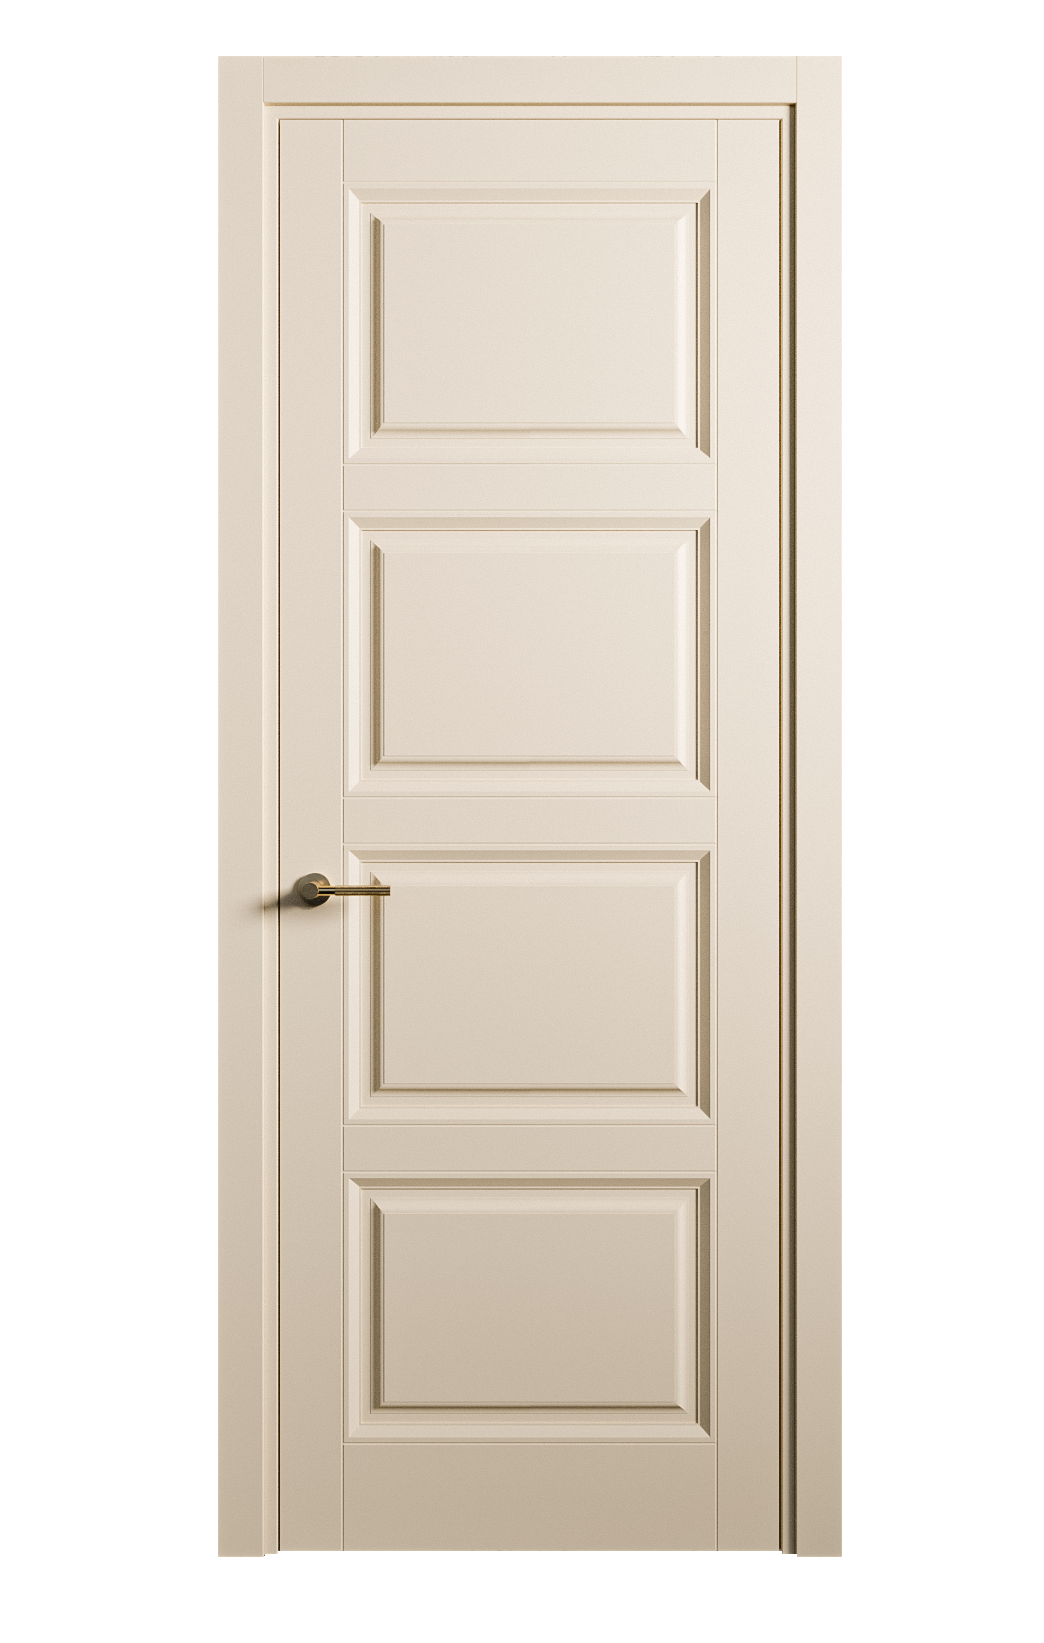 Межкомнатная дверь Venezia-4 глухая эмаль ral 1015 25859